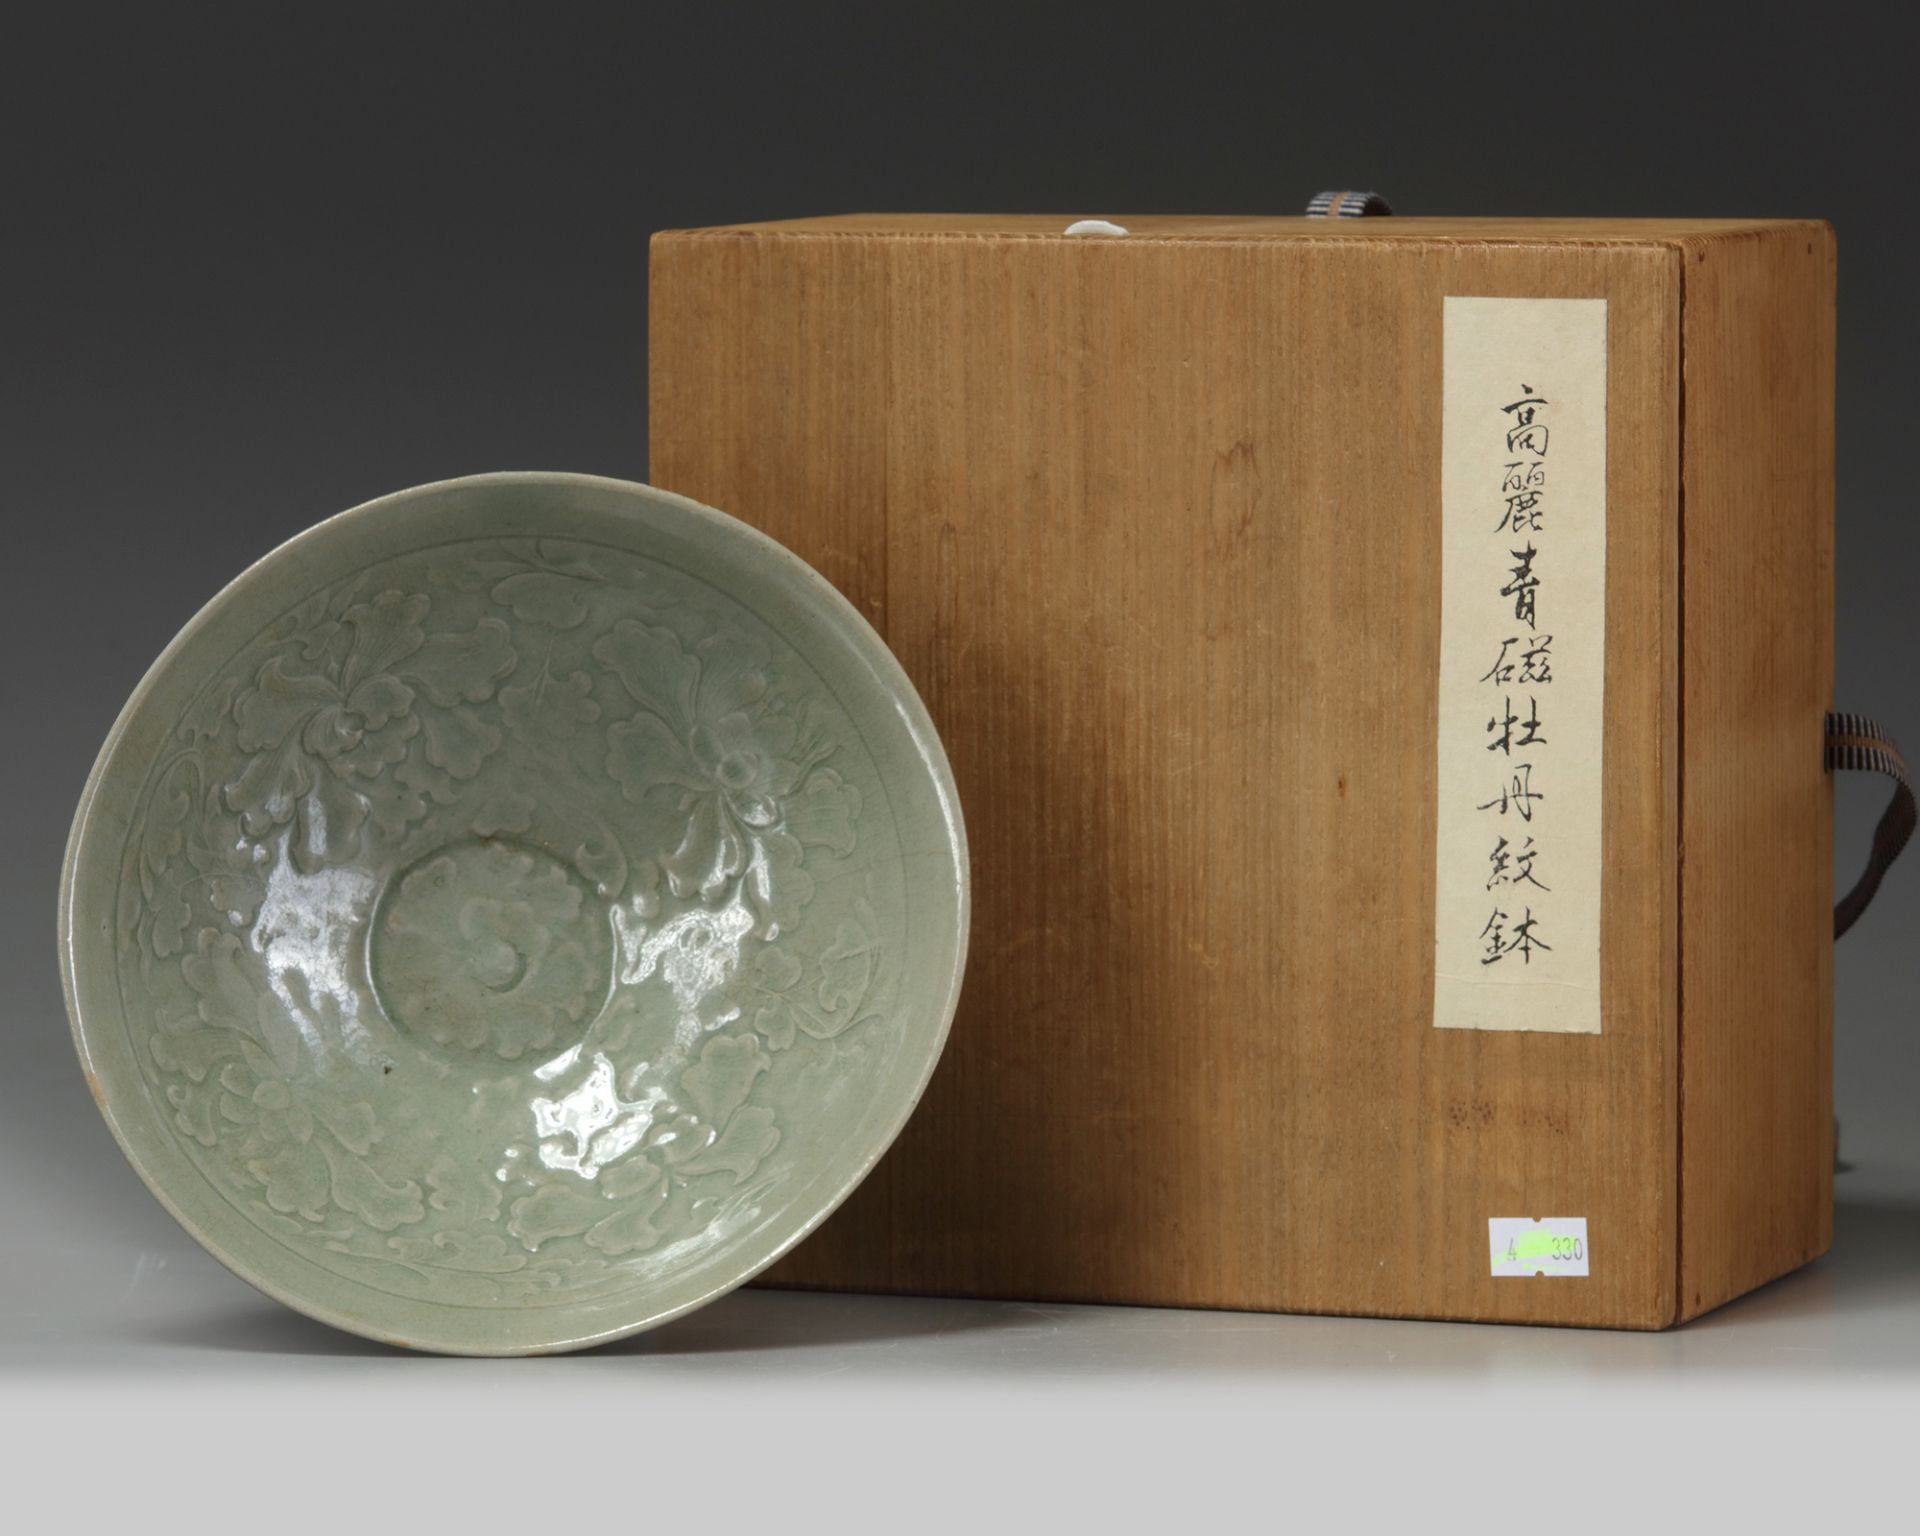 A KOREAN CELADON-GLAZED LOTUS BOWL, GORYEO DYNASTY, 918-1392